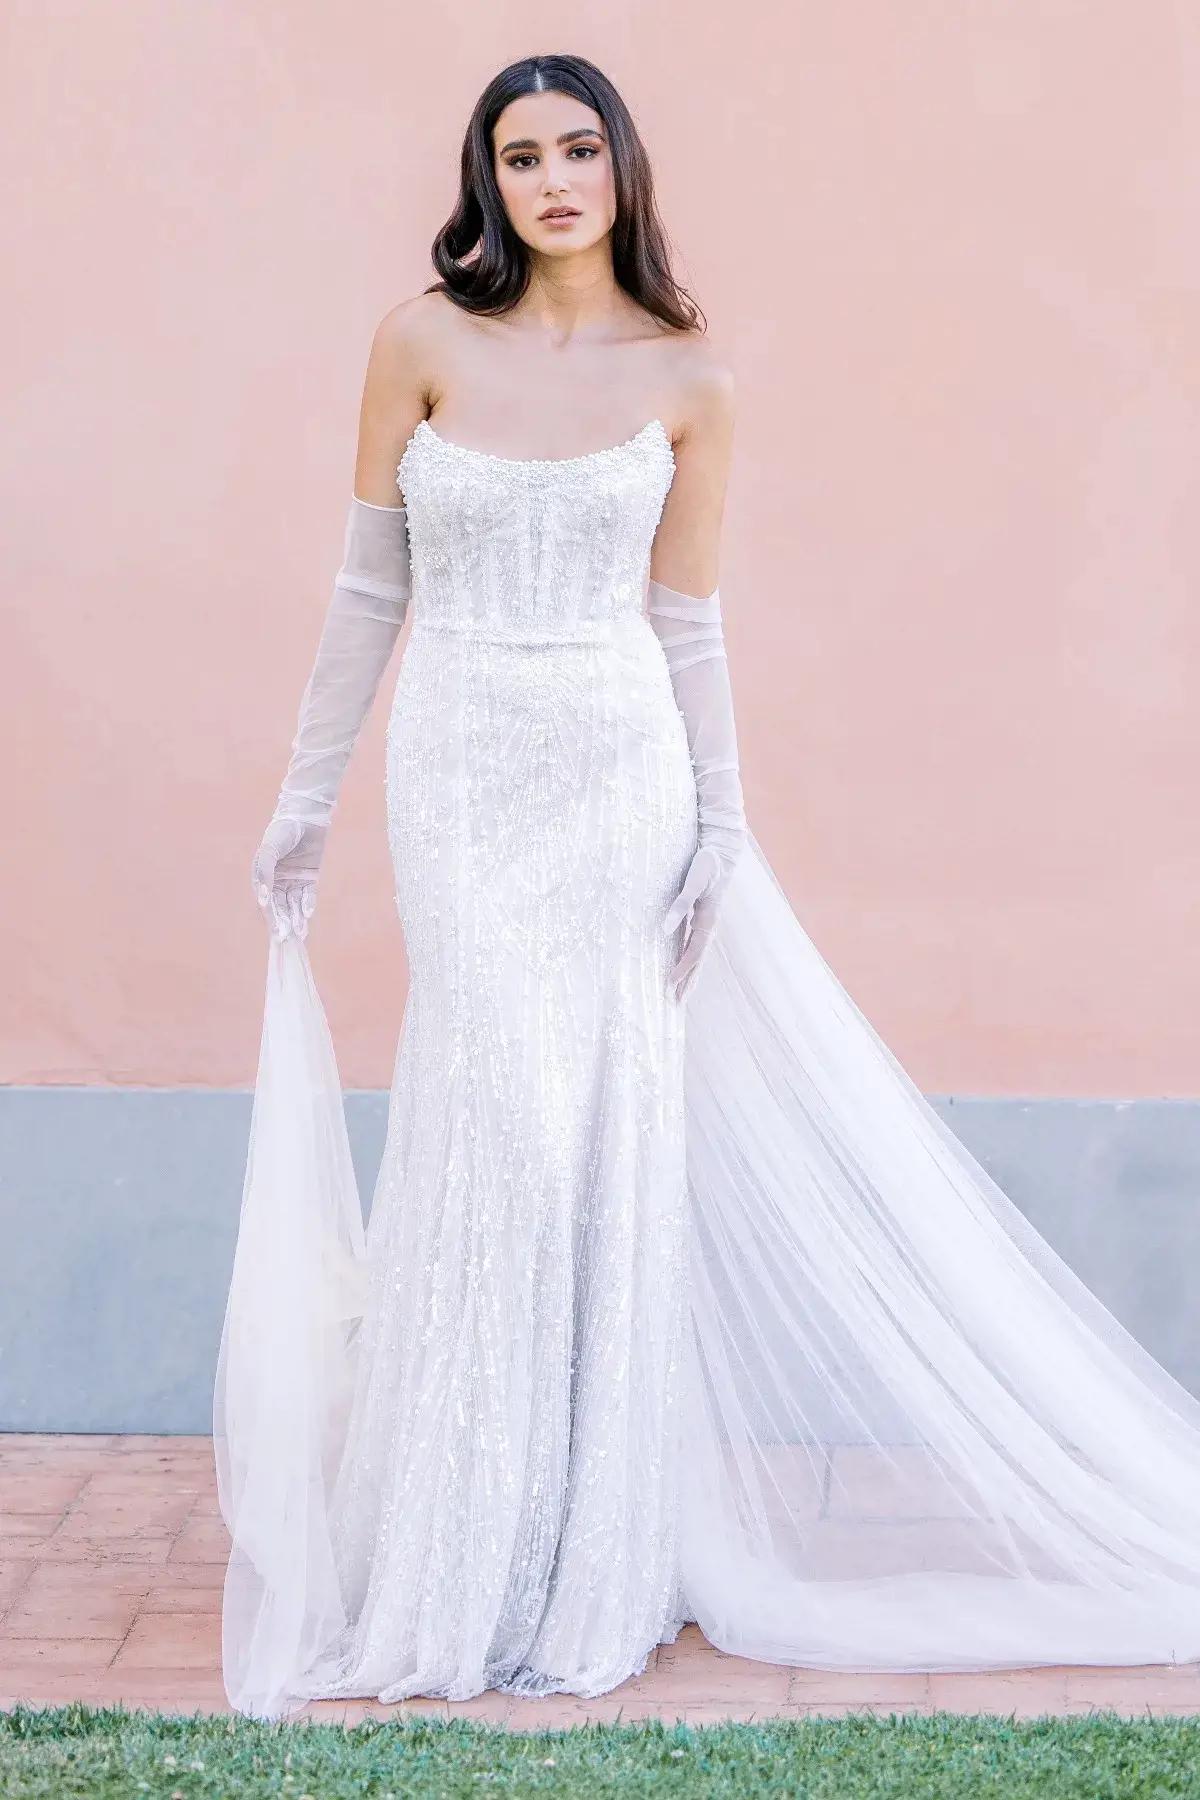 Model wearing white dress by Watters